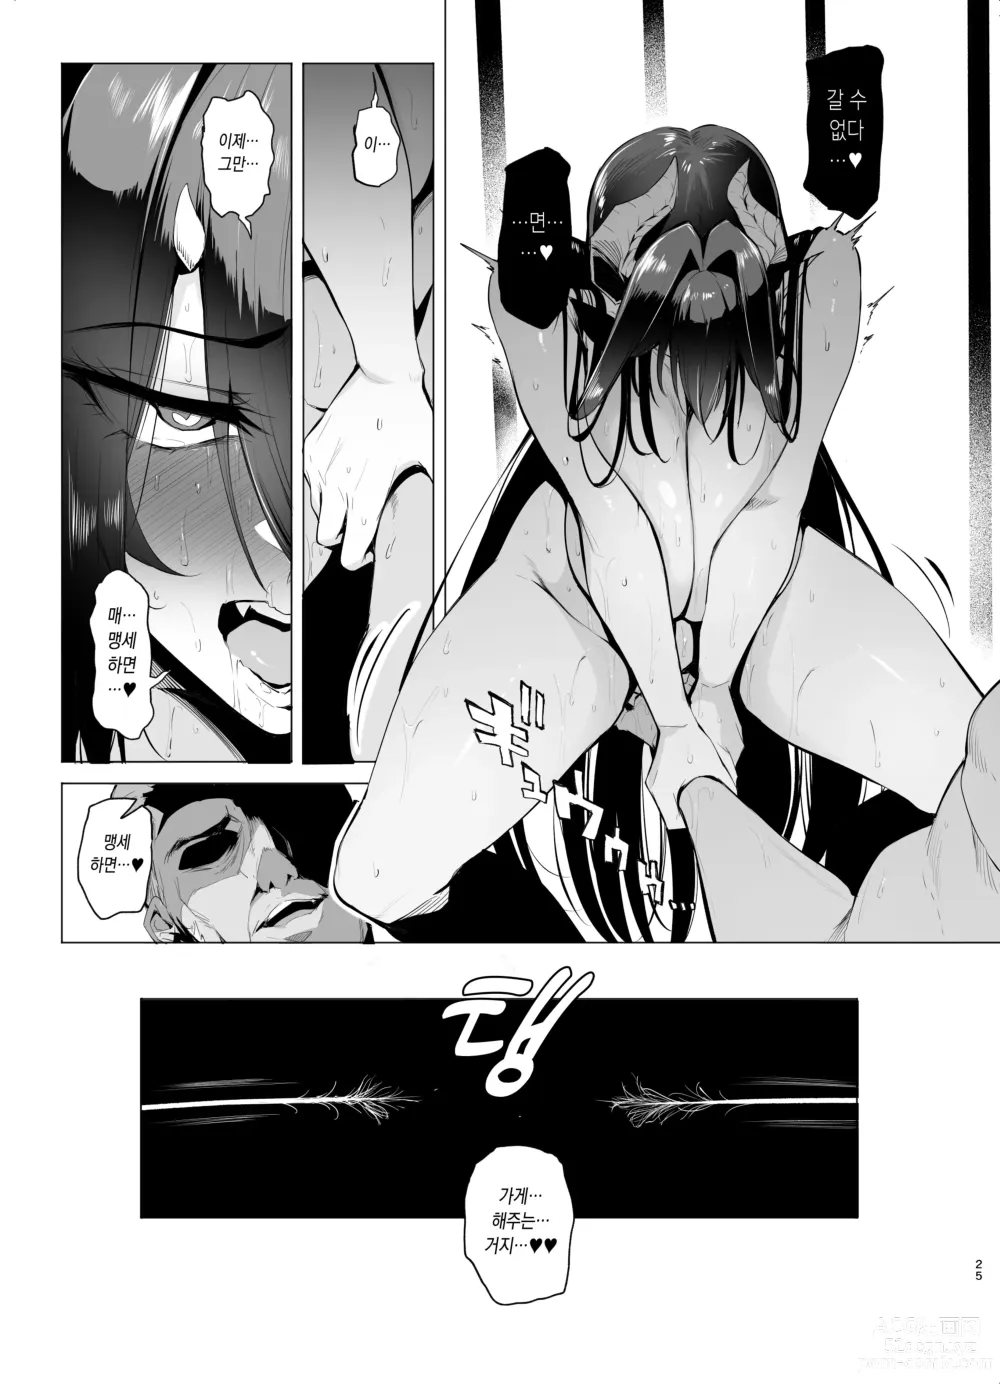 Page 24 of doujinshi 암컷 뽑기 III 프리뷰 판